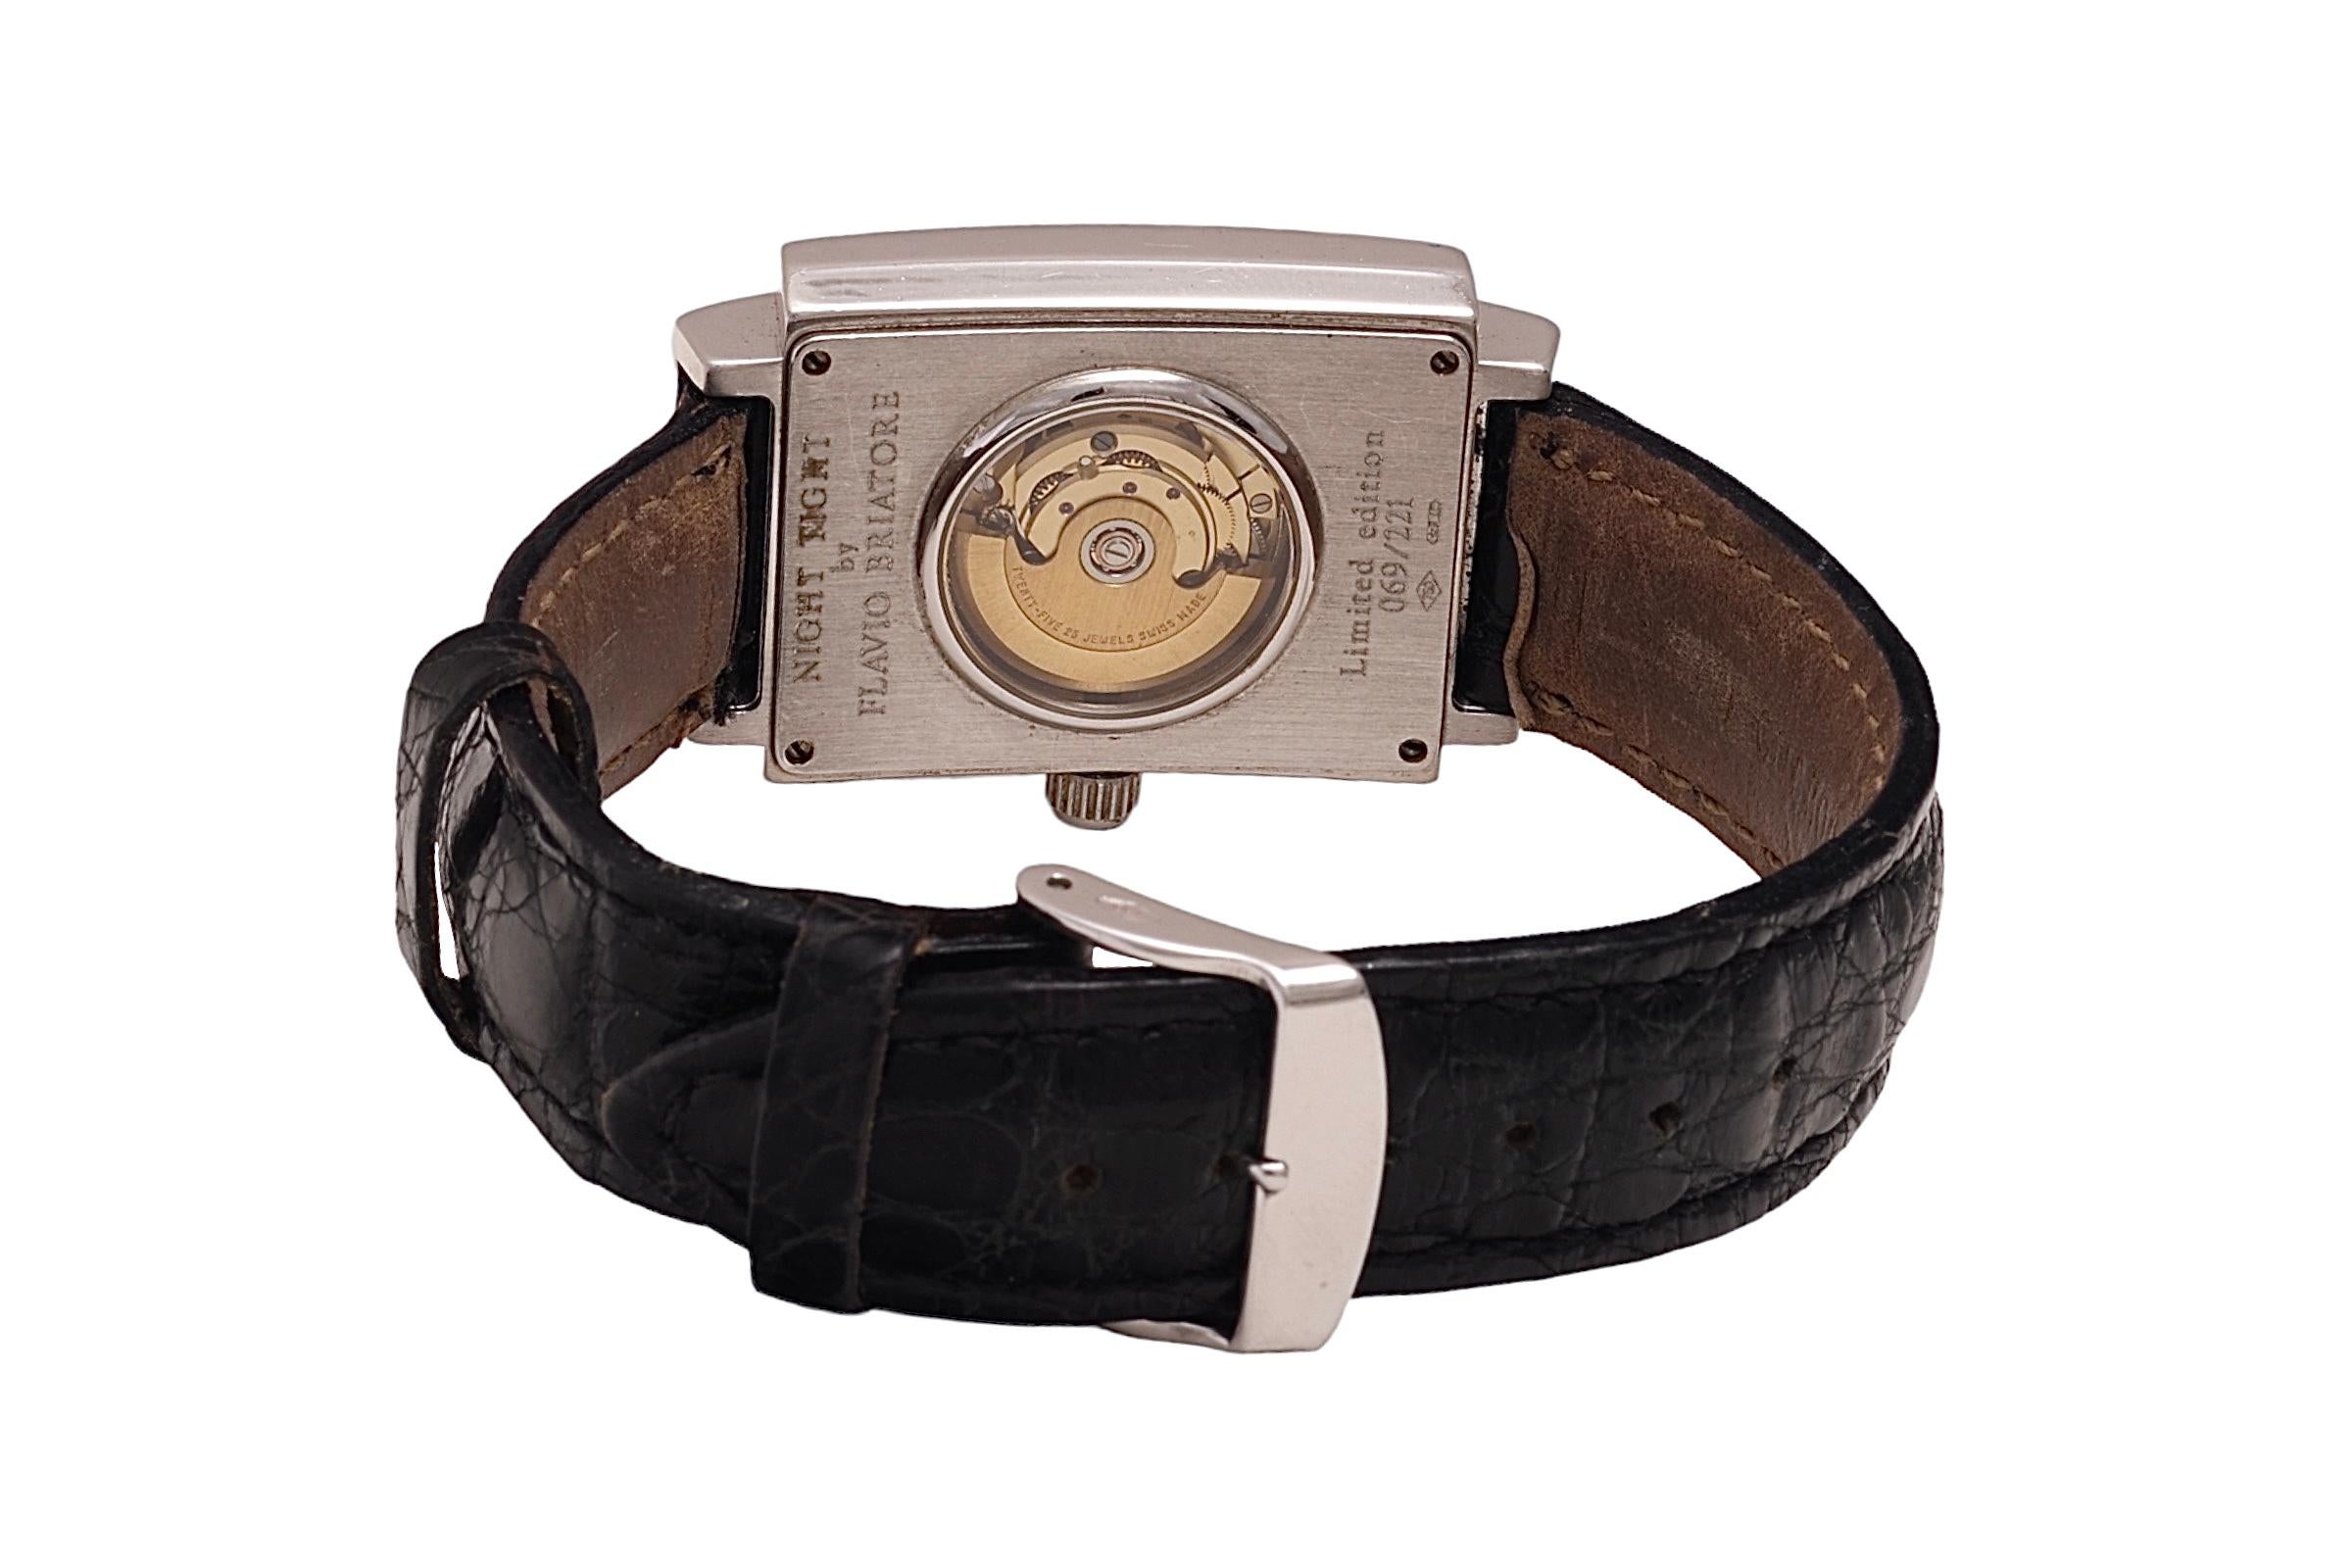 18 Kt Gold Flavio Briatore / Carlo Riva Limited Edition Diamond Wrist Watch  For Sale 1